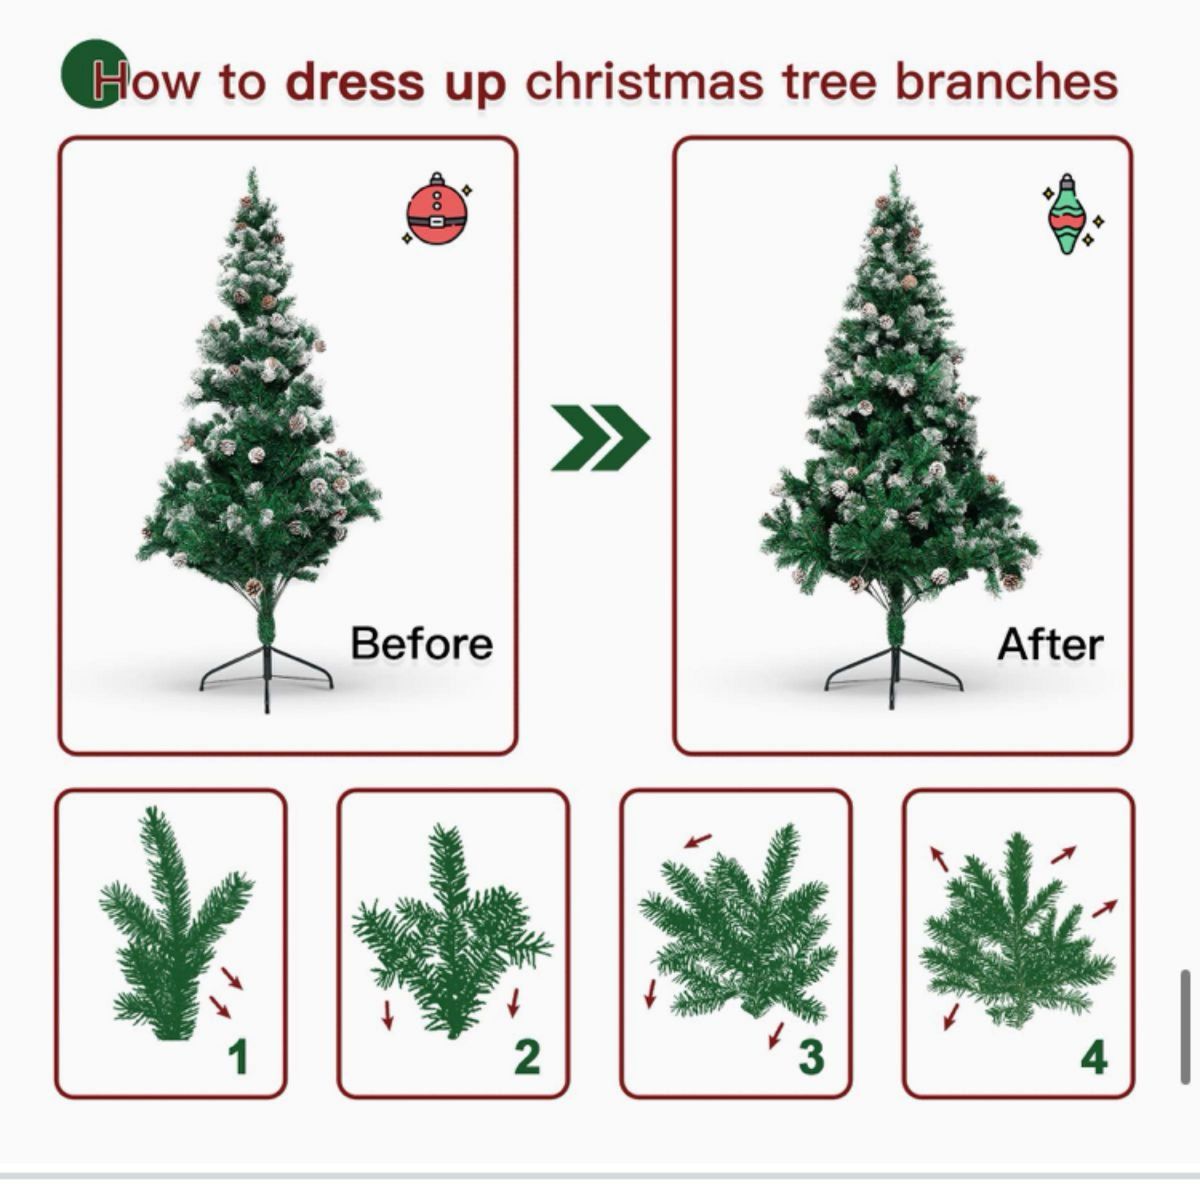 クリスマスツリー 180cm クリスマス 装飾 屋内 屋外 インテリア 北欧 組立簡単 収納便利 日本語説明書付き おしゃれ